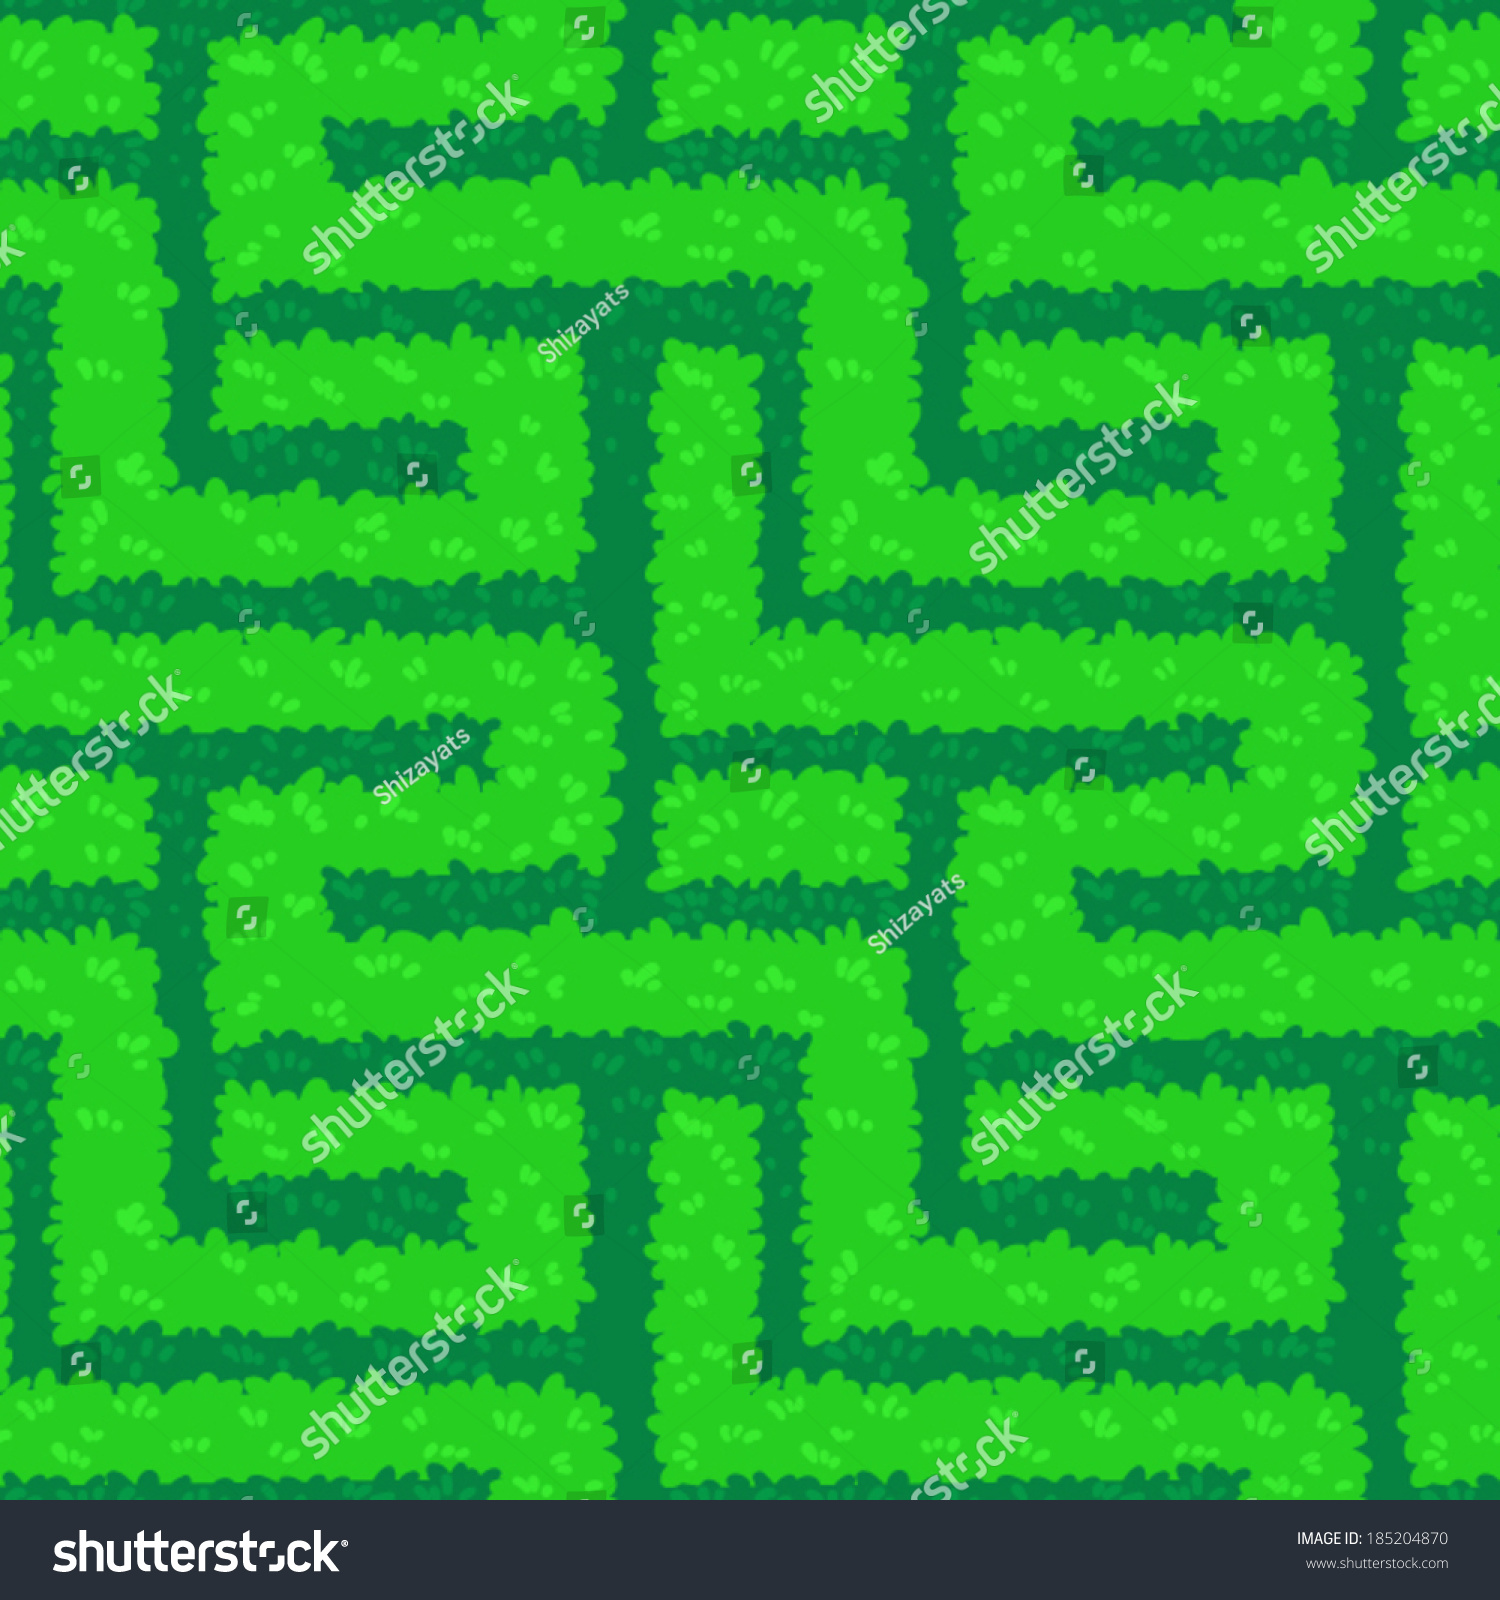 Green Maze Vector Seamless Pattern Stock Vector 185204870 - Shutterstock